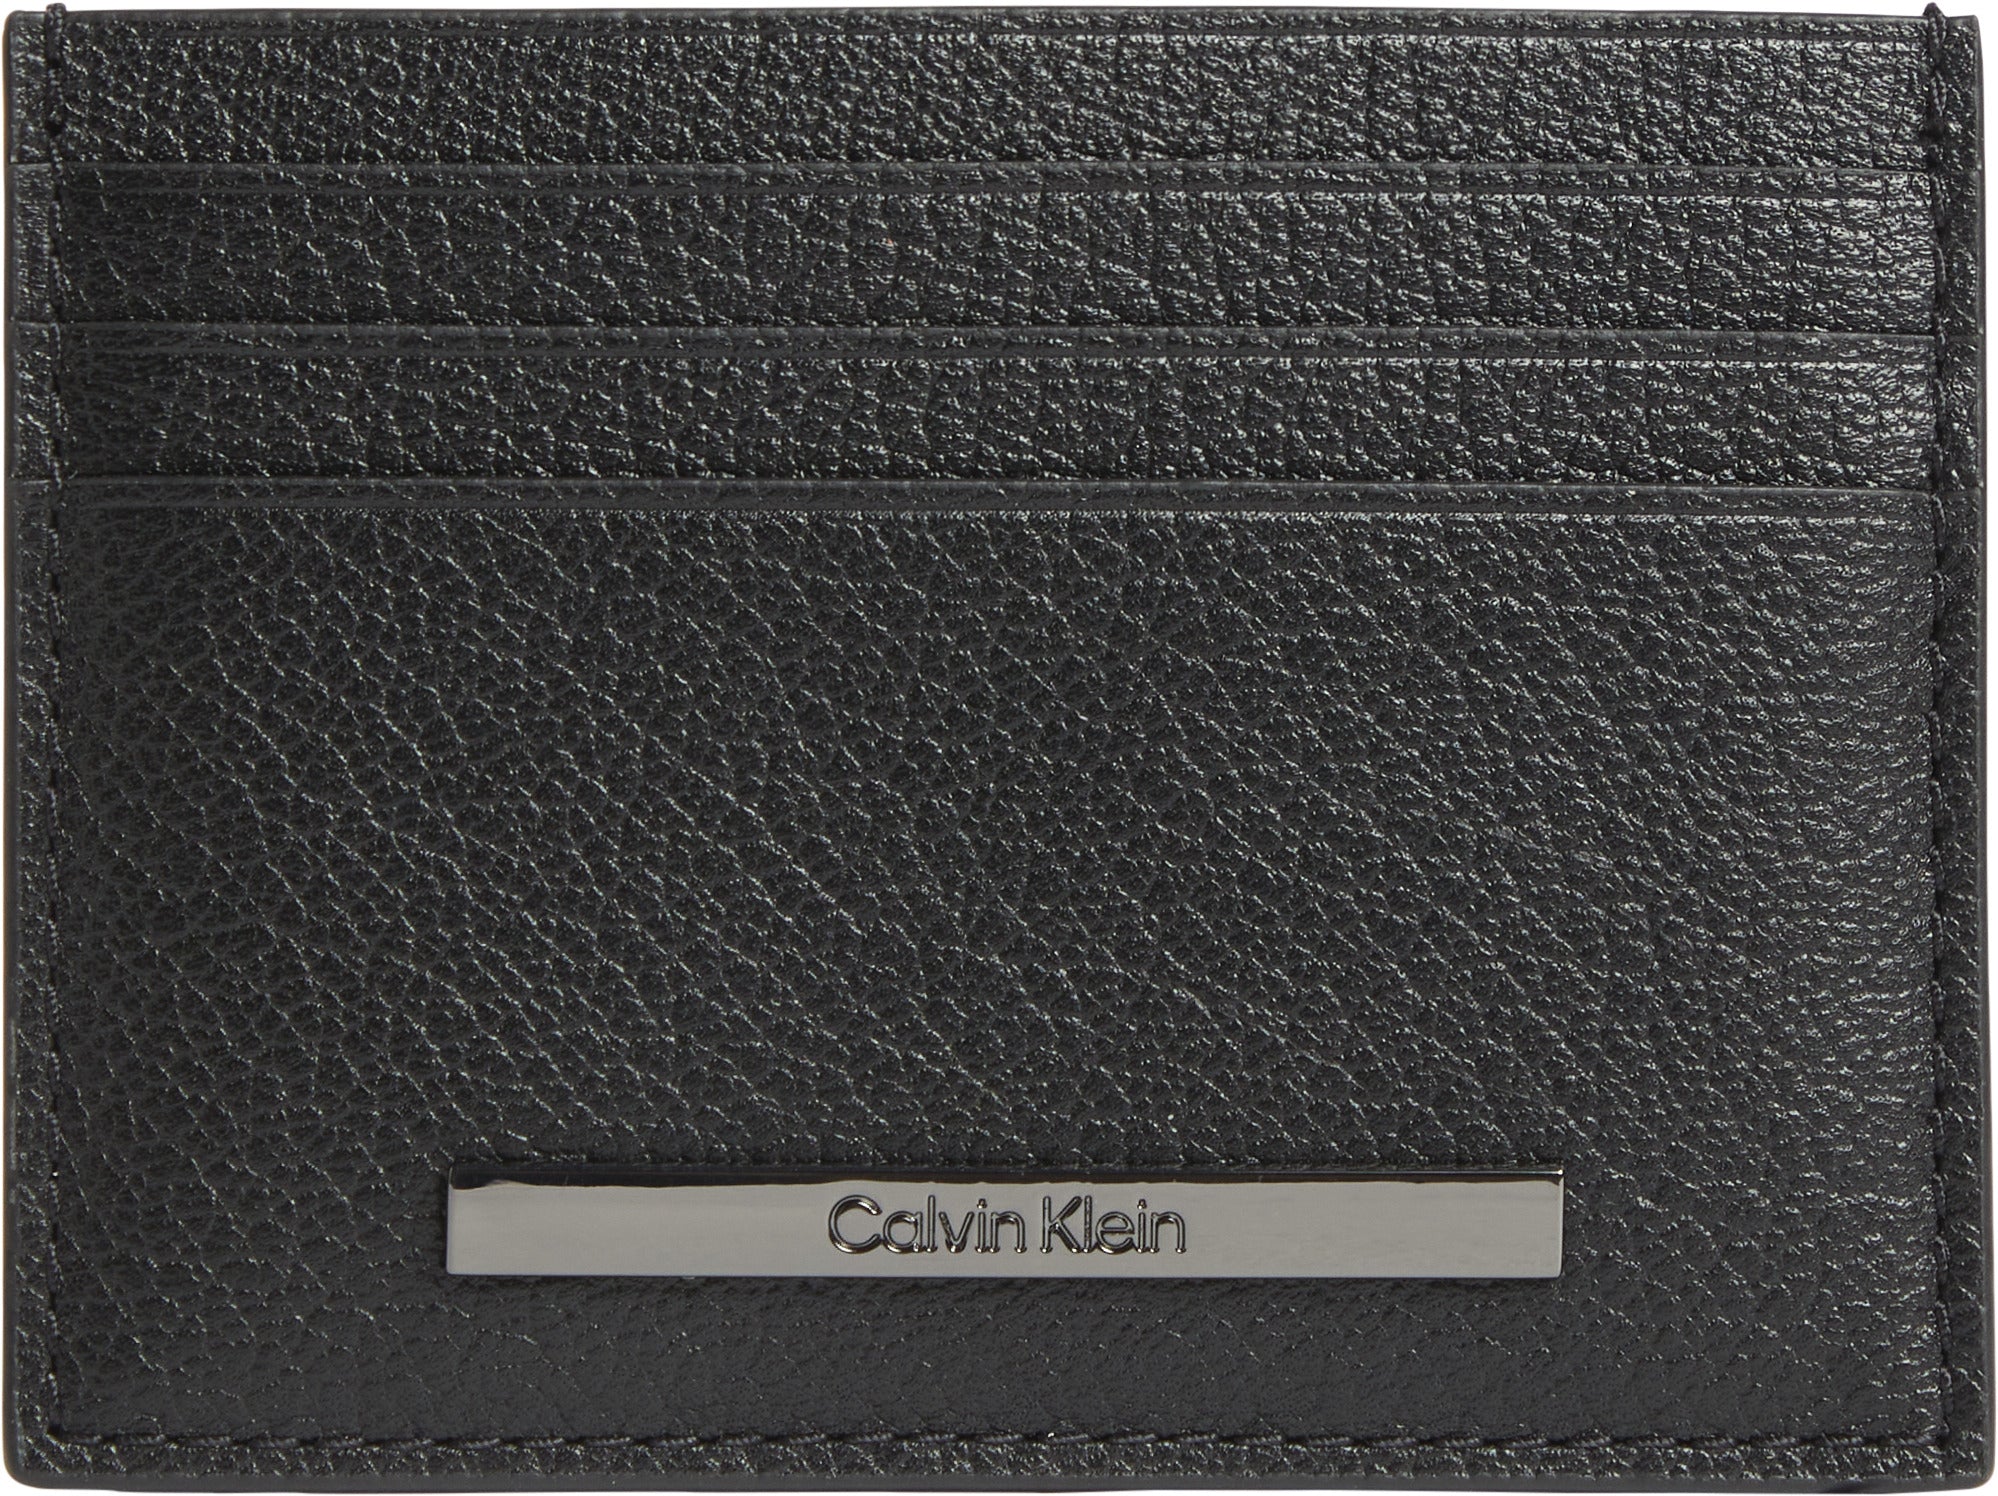 Suport de carduri Calvin Klein Modern Bar 6Cc